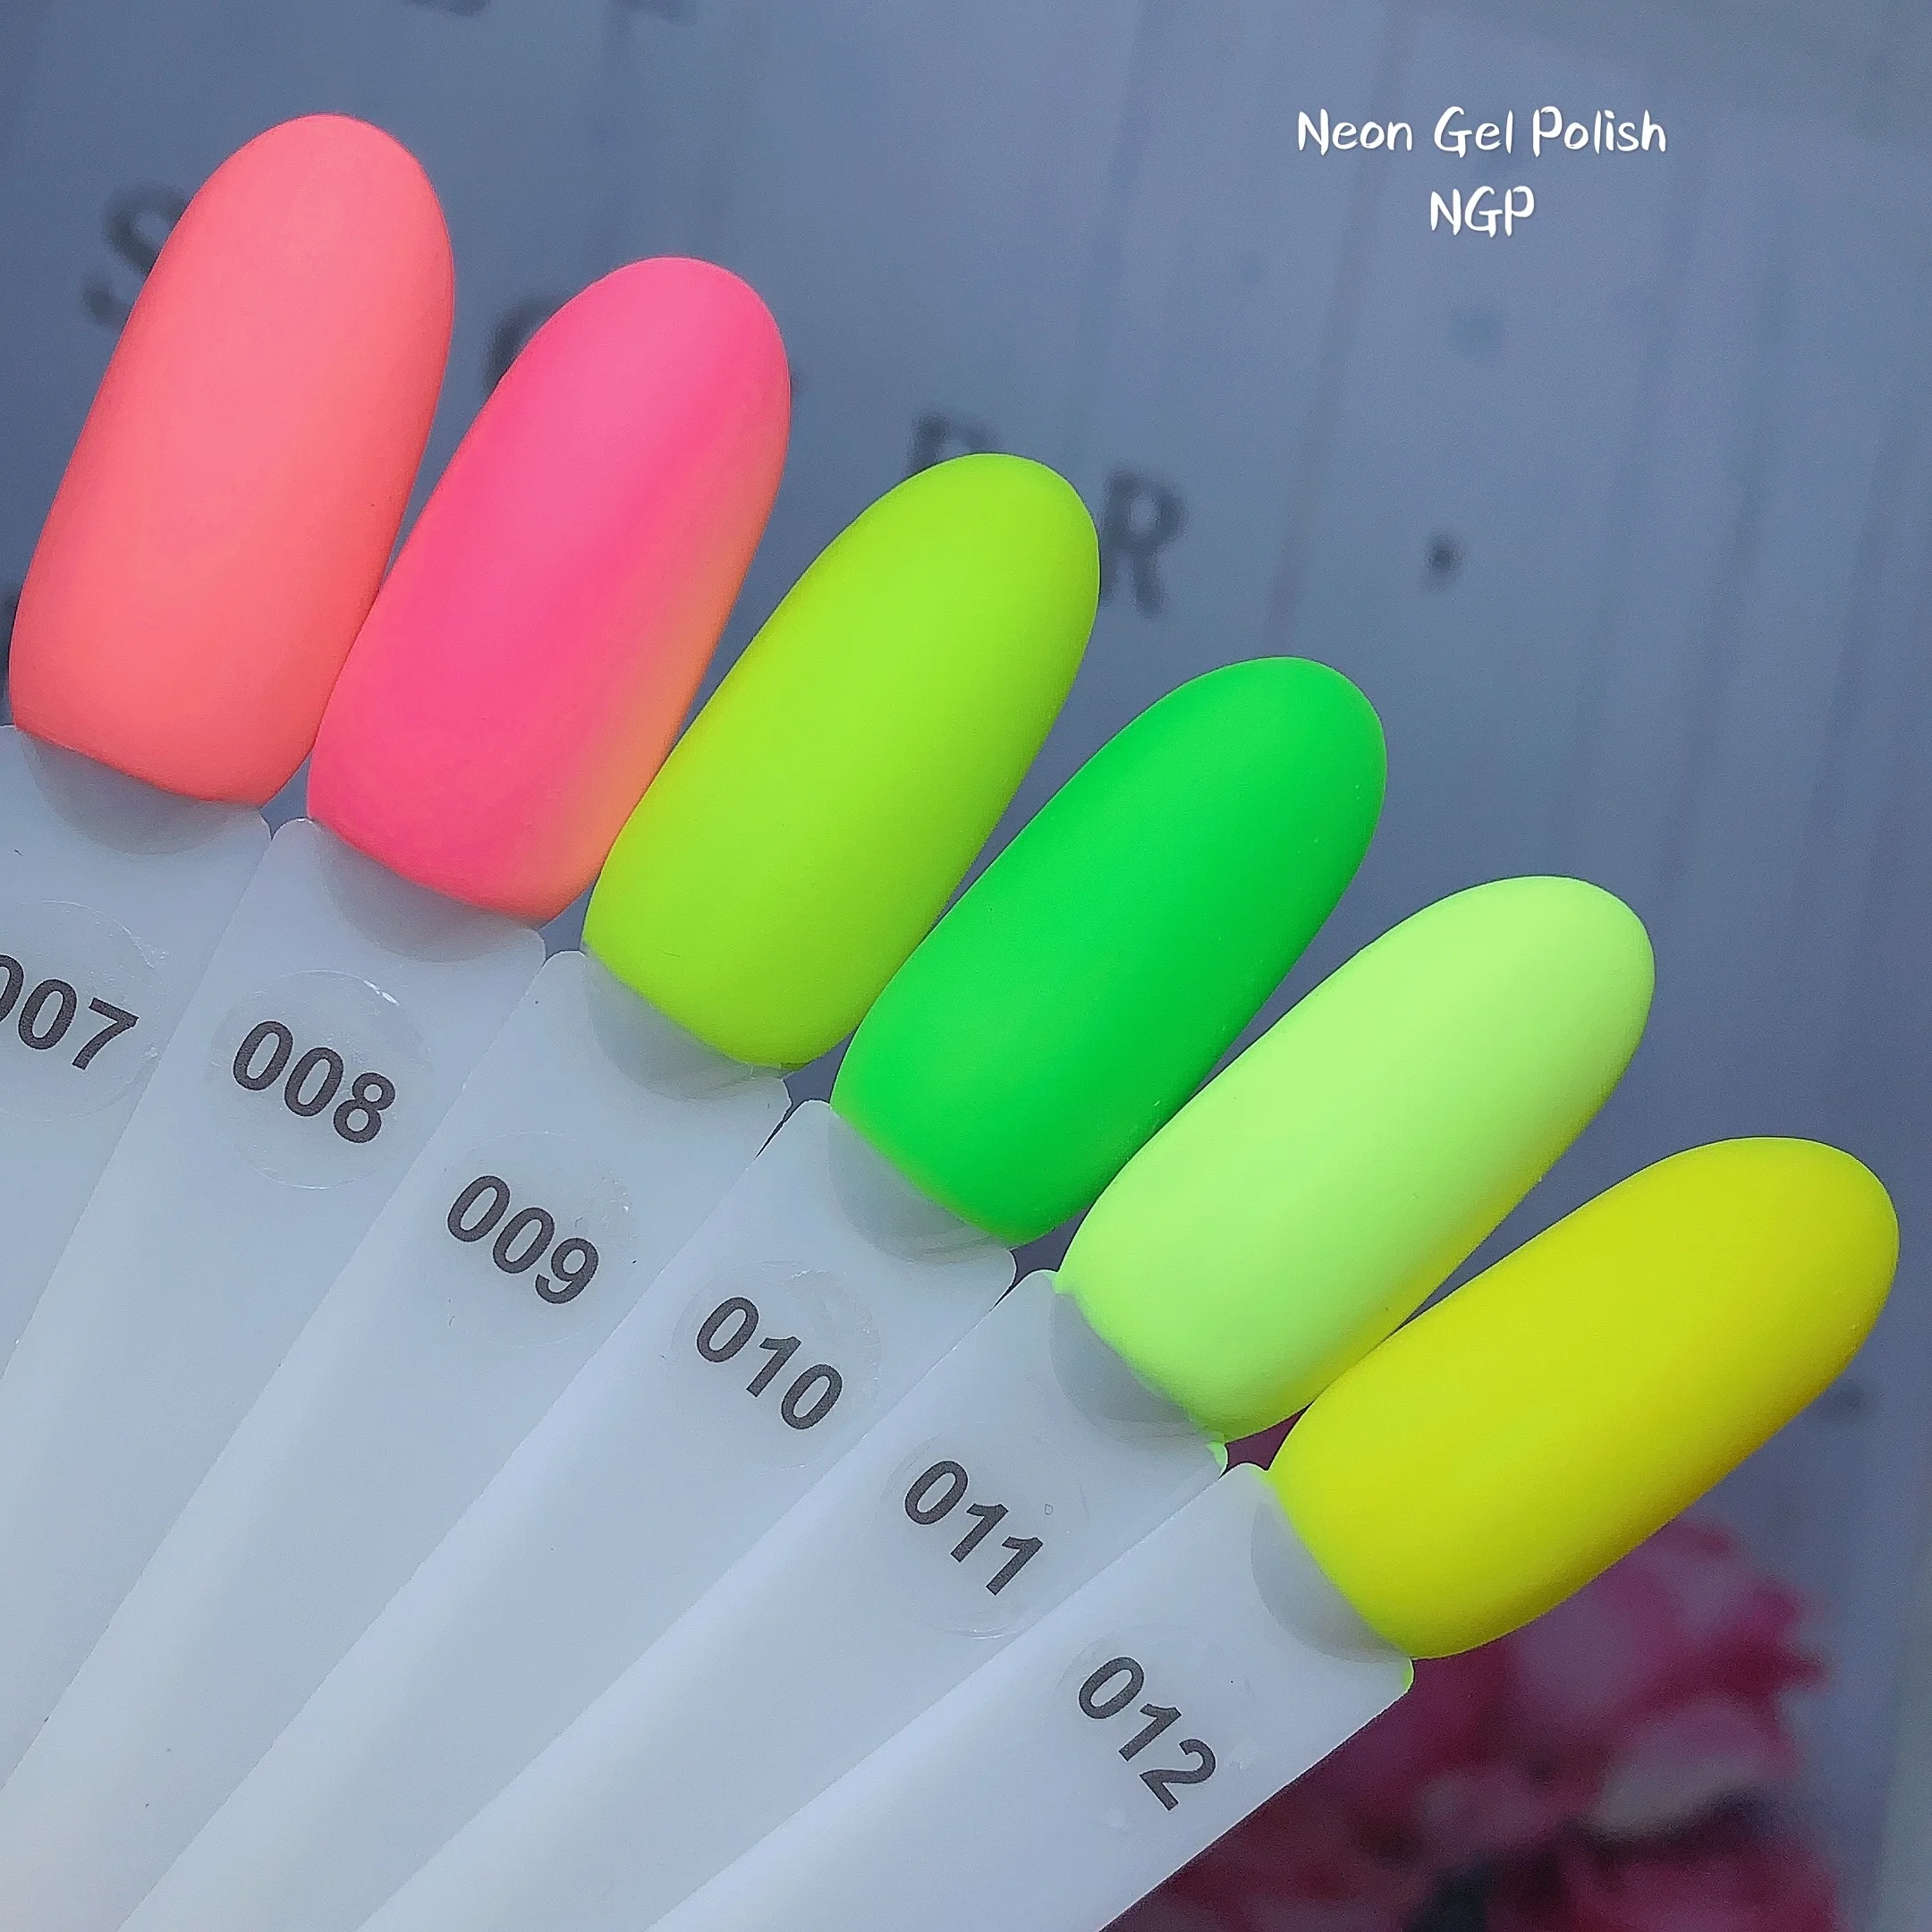 
Неоновый Гель-лак, бесплатный образец, сделано в Китае, товары для красоты оптовая продажа, поставка накладных ногтей Высокое качество длительное замочить от УФ-гель лак для ногтей 